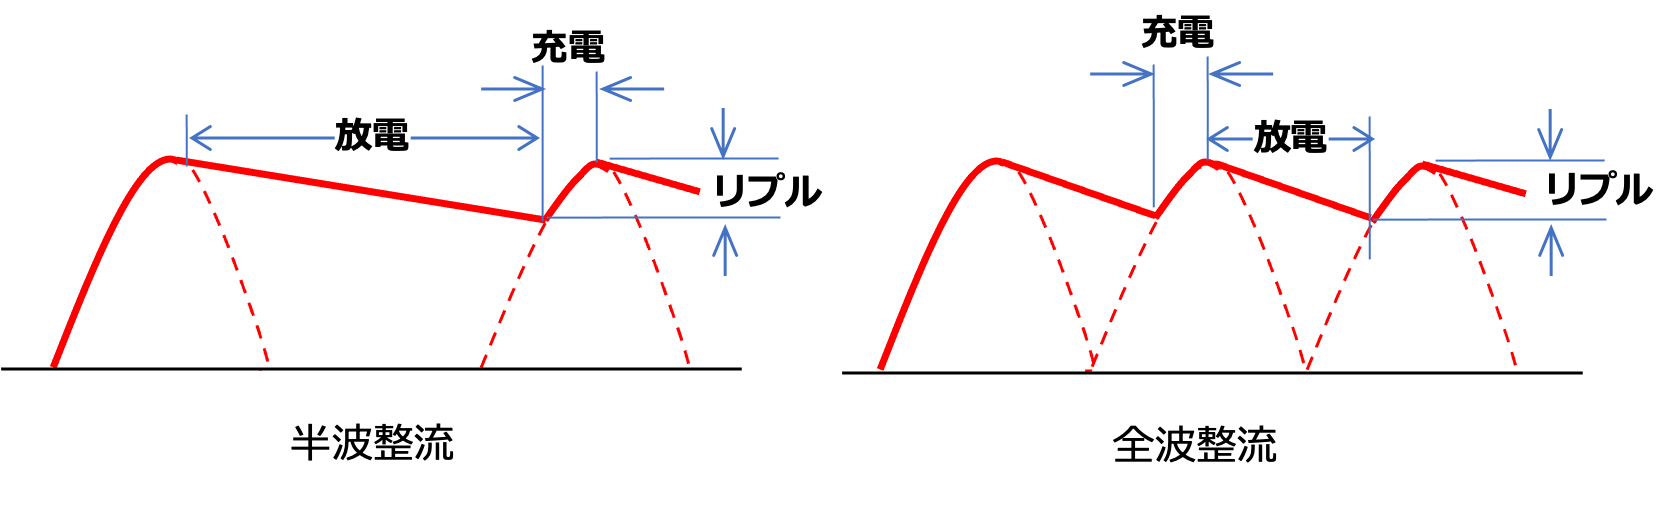 図14 コンデンサによる電圧の平滑化